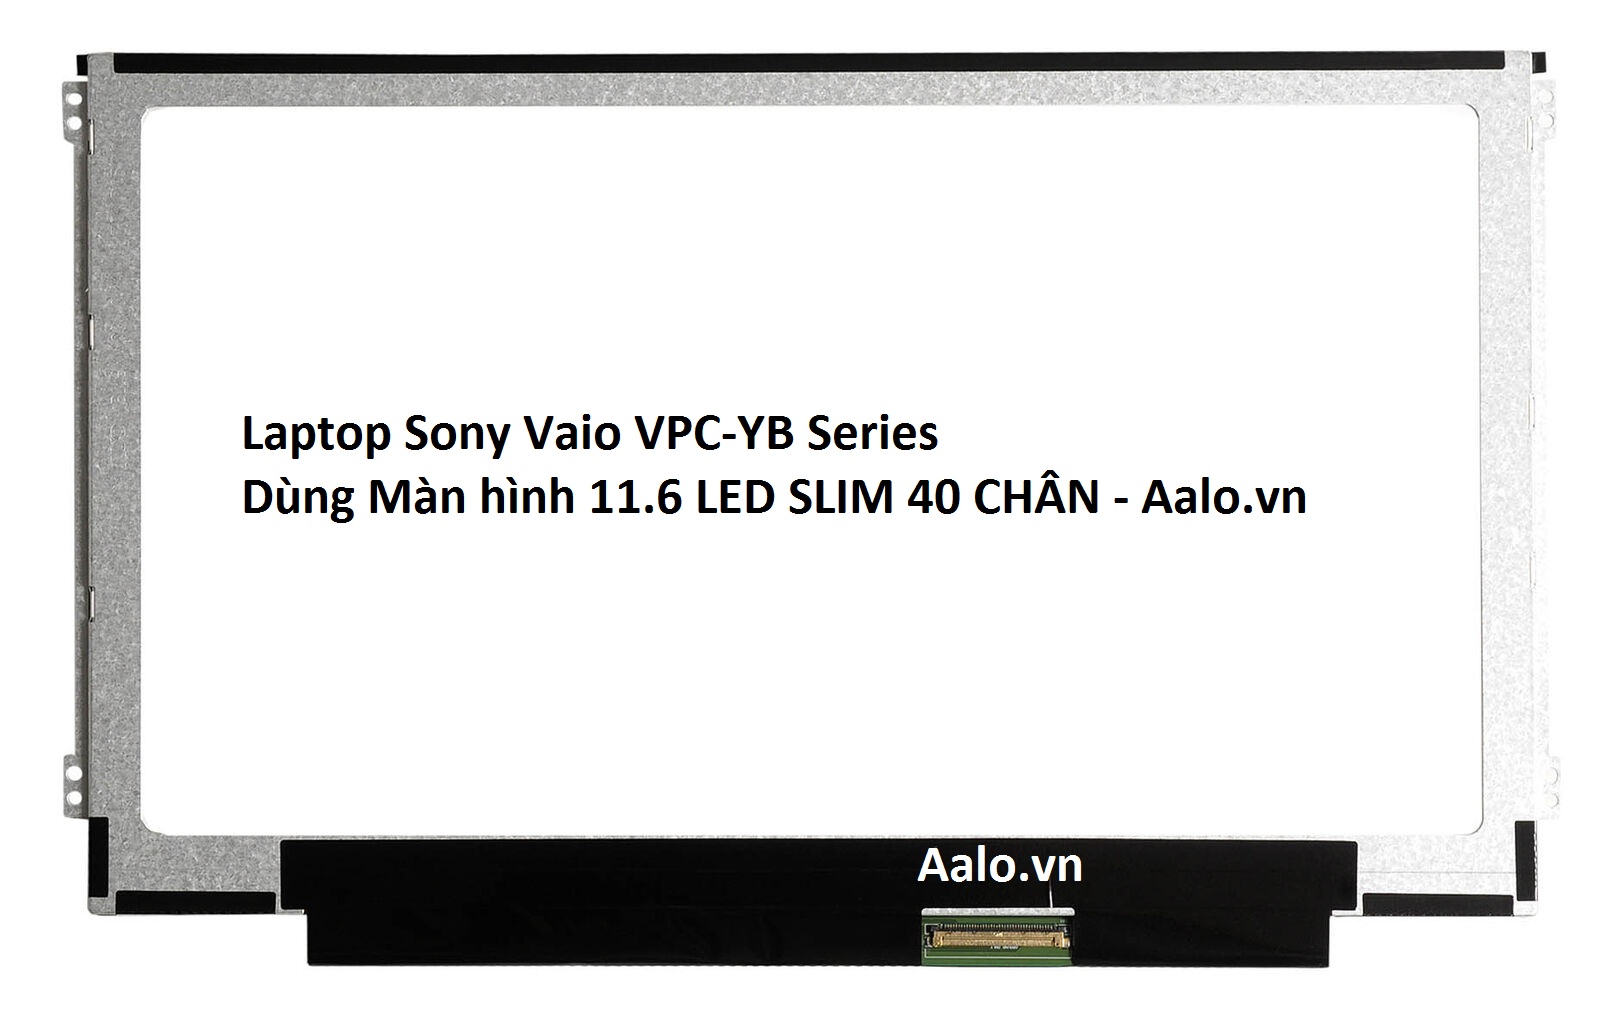 Màn hình Laptop Sony Vaio VPC-YB Series - Aalo.vn